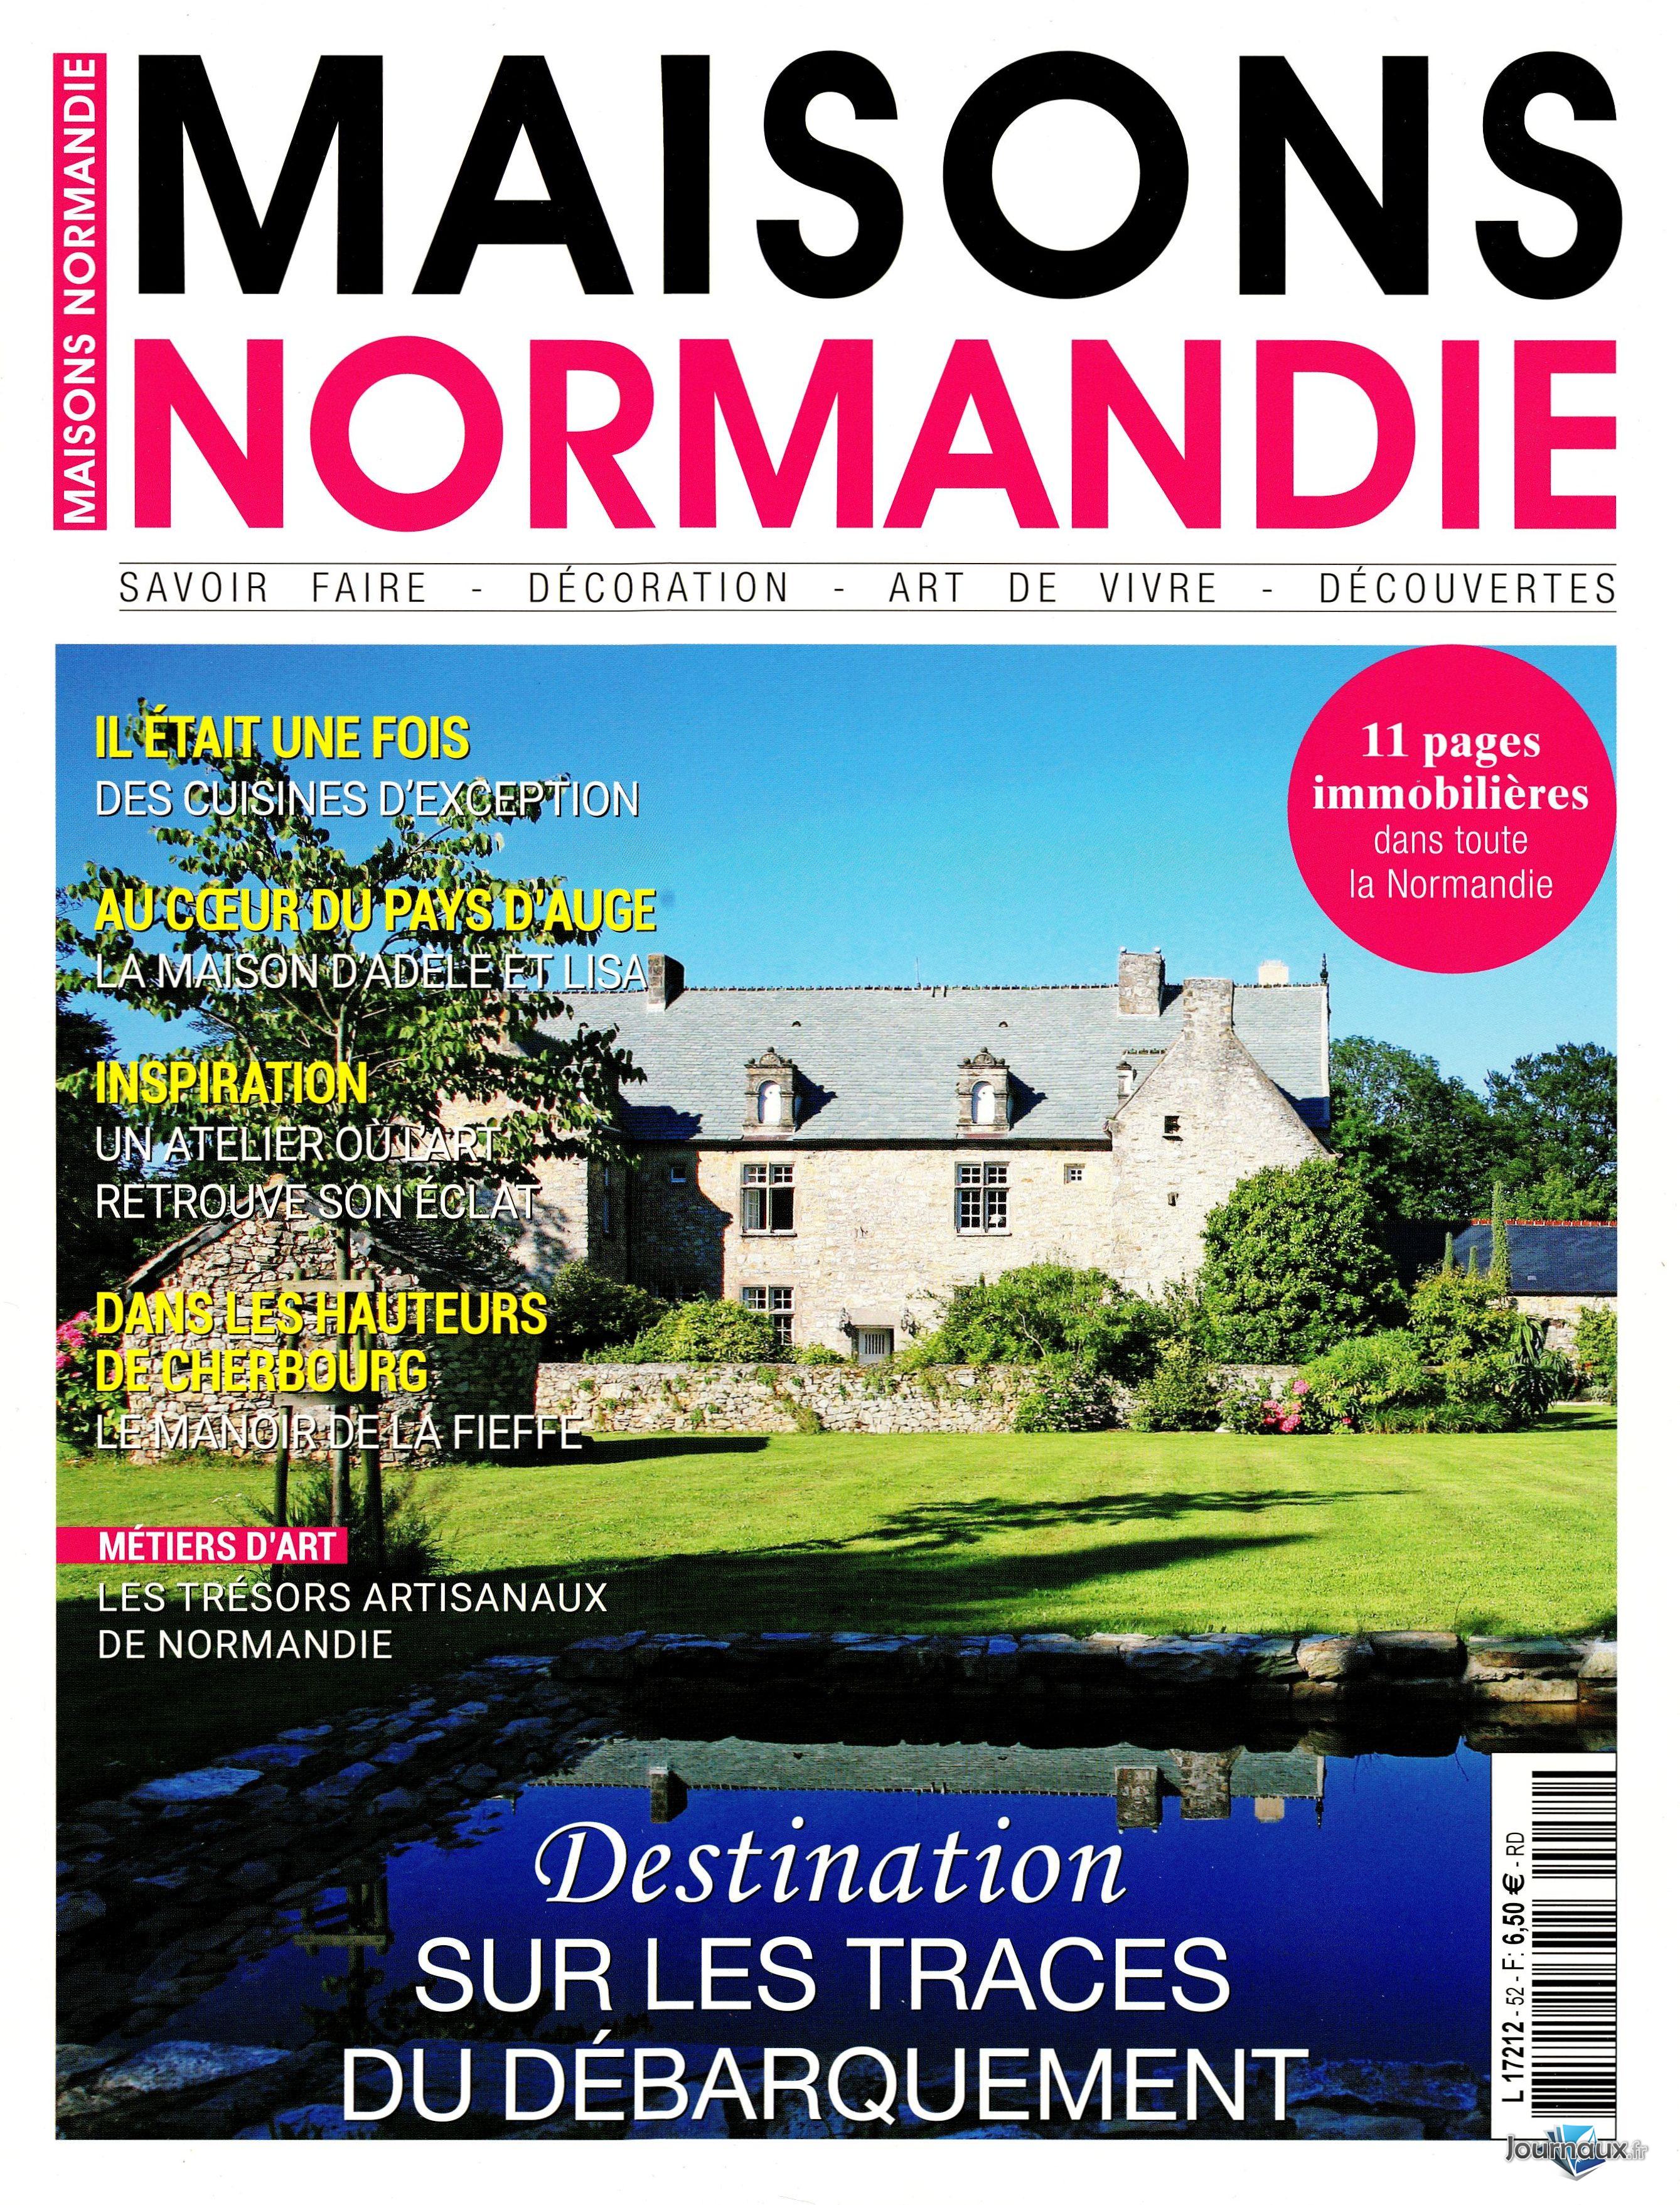 Maison en Normandie : une déco chic et classique - Elle Décoration